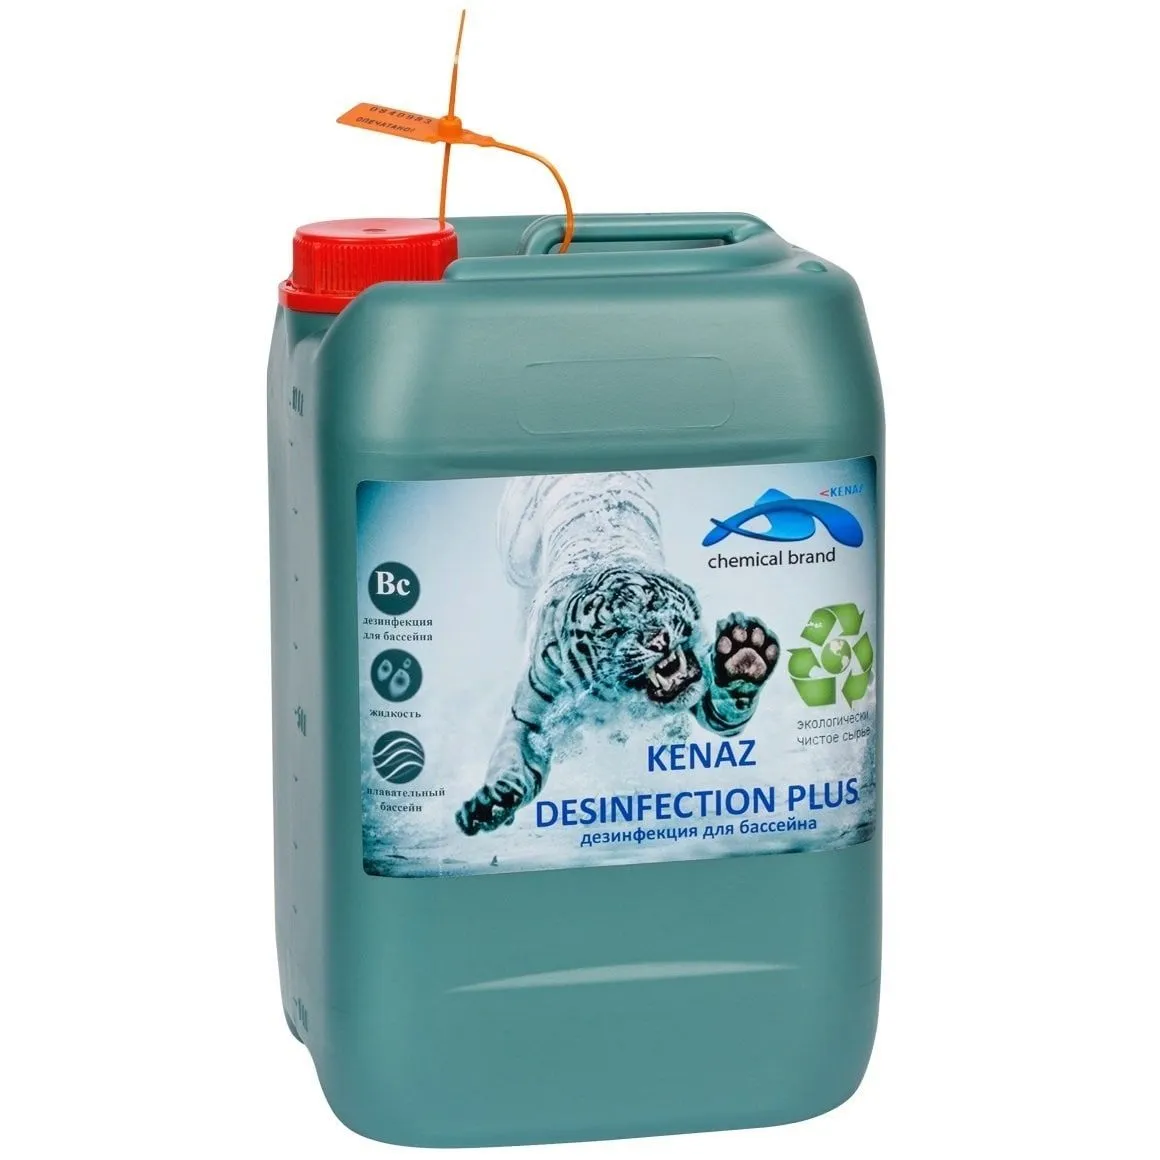 Жидкое средство для дезинфекции поверхностей бассейна Kenaz Desinfection Plus от магазина gidro-z